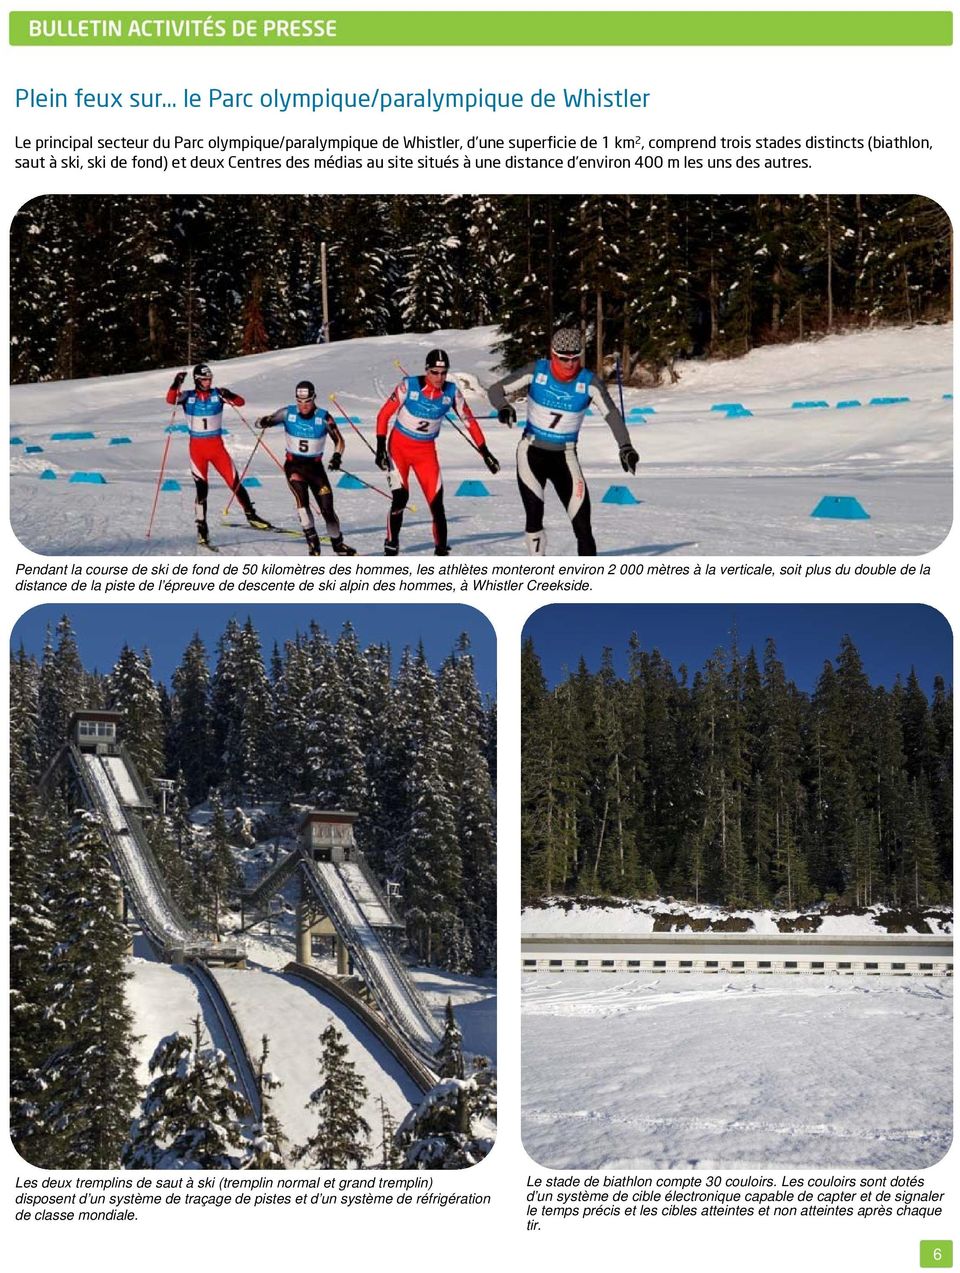 Pendant la course de ski de fond de 50 kilomètres des hommes, les athlètes monteront environ 2 000 mètres à la verticale, soit plus du double de la distance de la piste de l épreuve de descente de